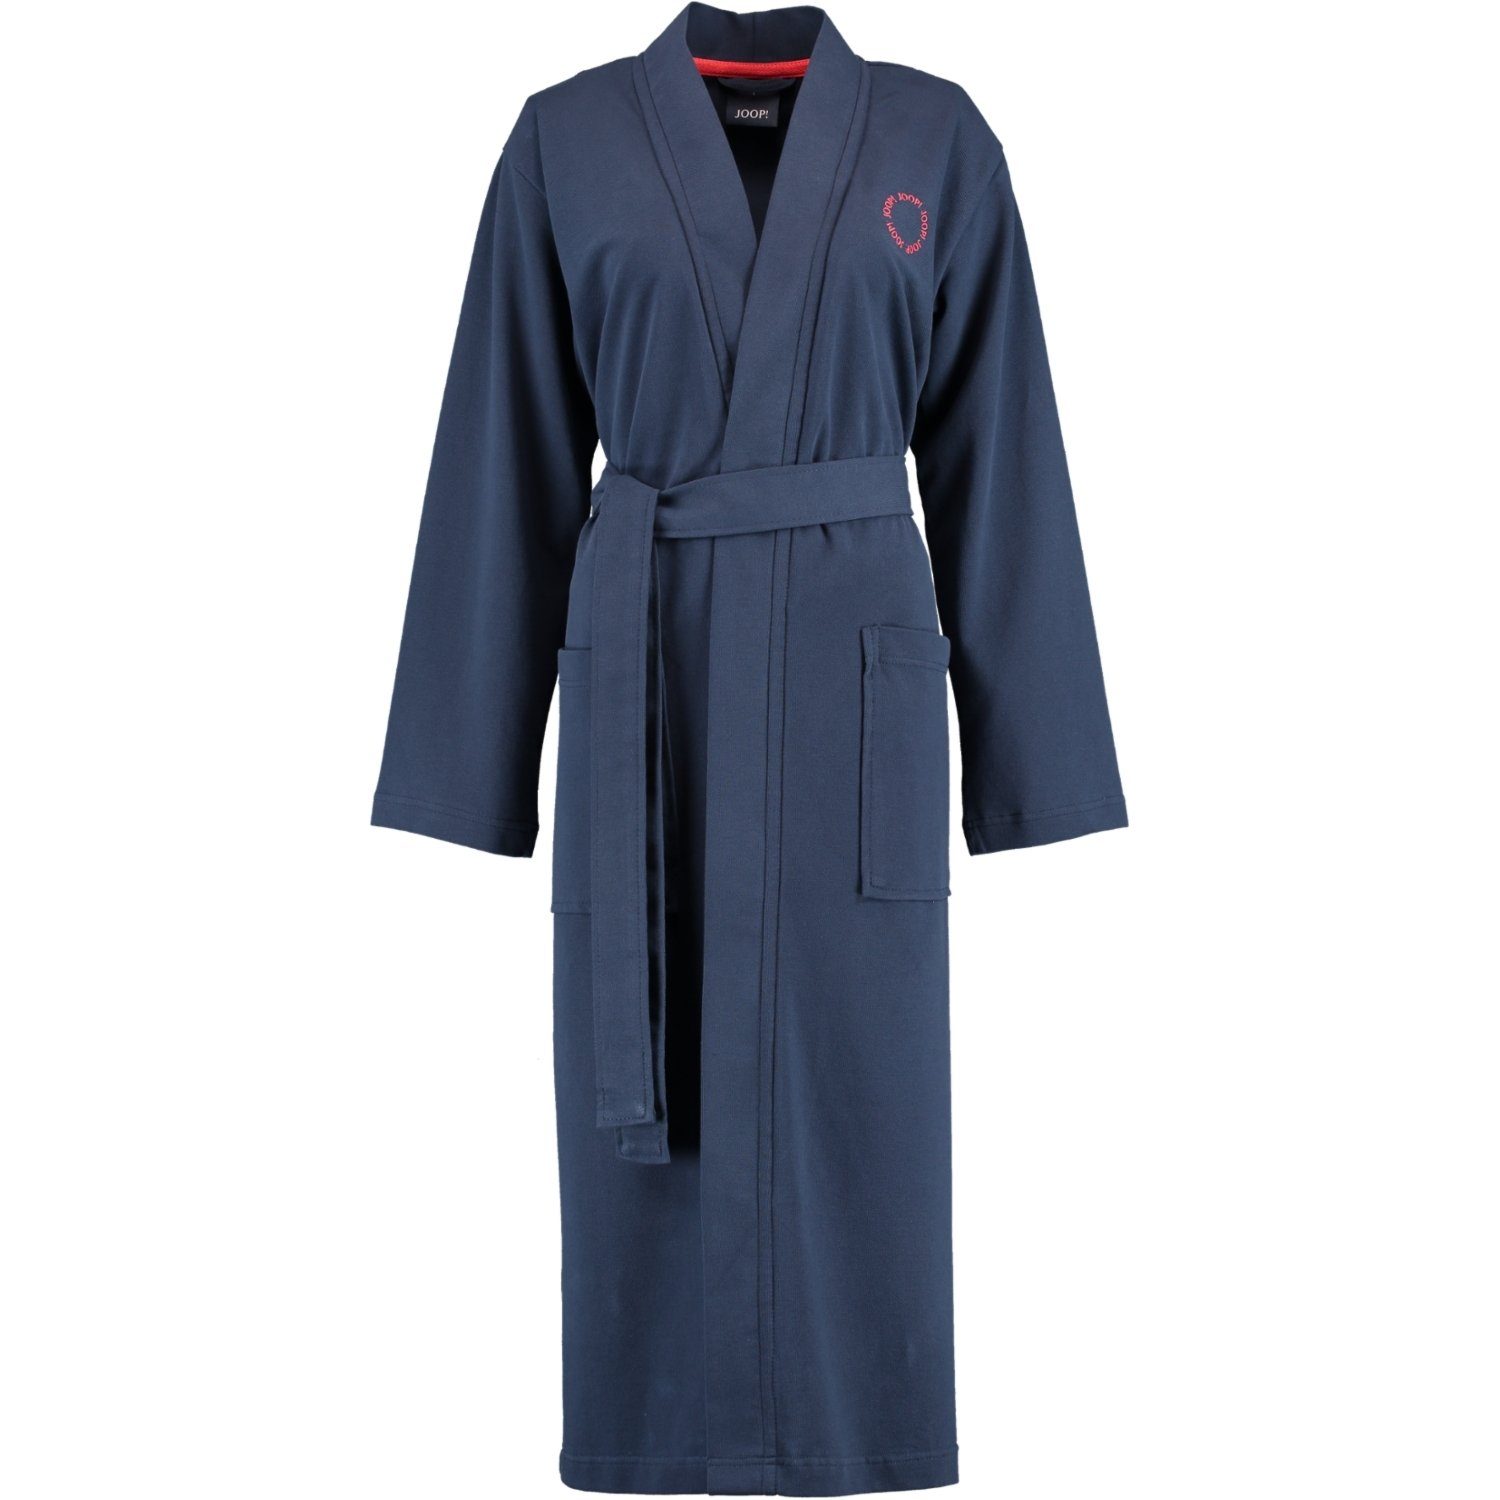 Joop! Damenbademantel 1654 Kimono Pique, Kimono, 100% Baumwolle Marine (12) | Damen Bademäntel